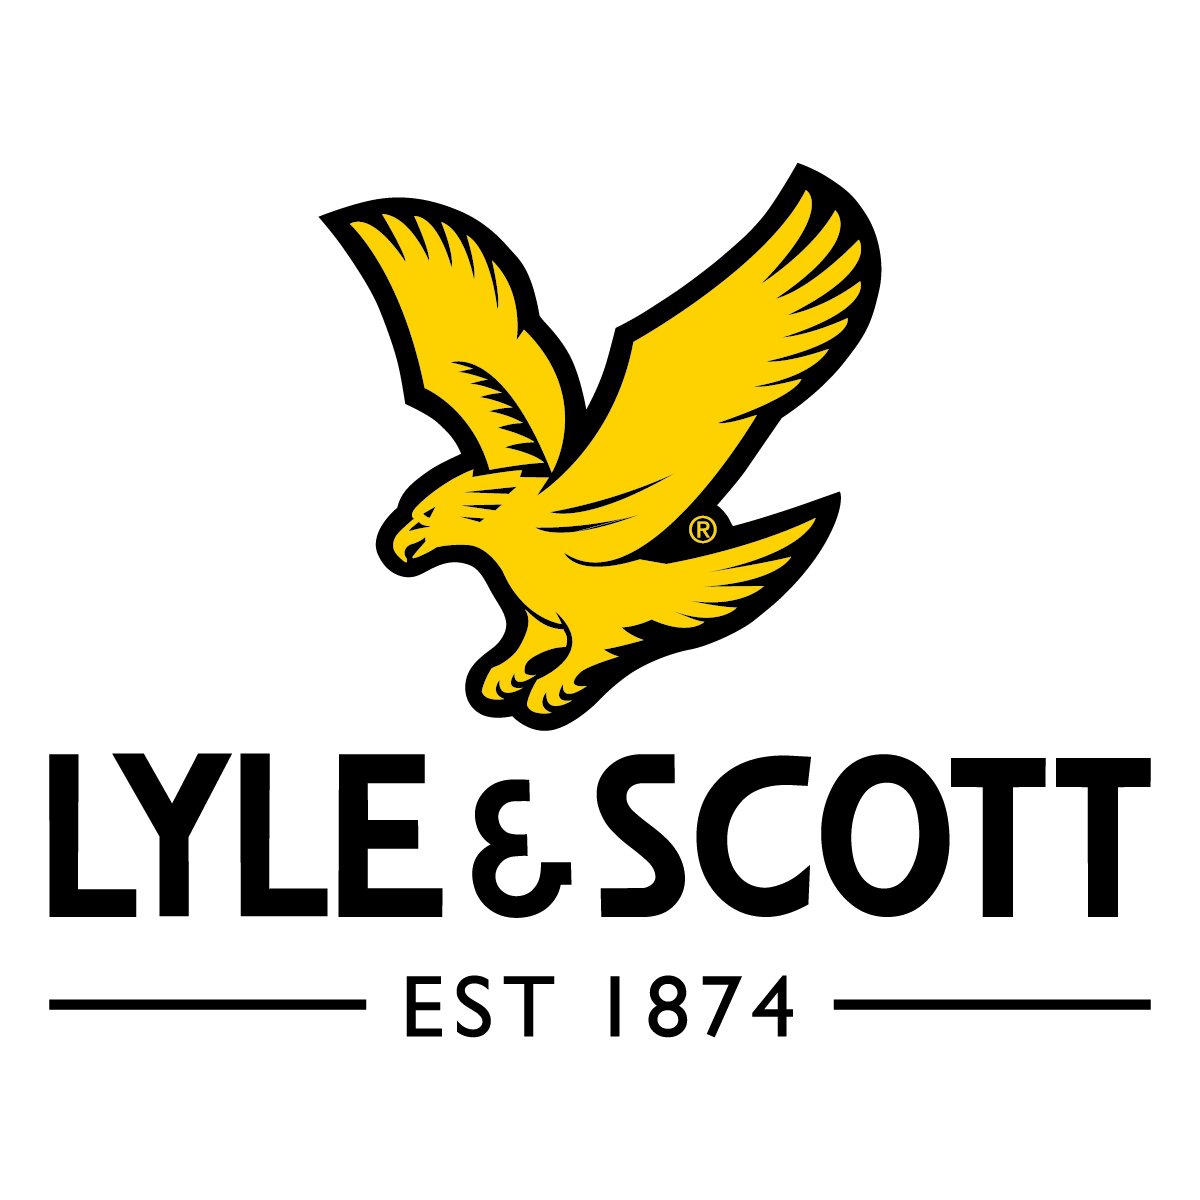 Бренд одежды с птичкой. Lyle & Scott Plus бренд. Лайл Скотт логотип. Значок Lyle Scott. Фирма одежды с желтым орлом.